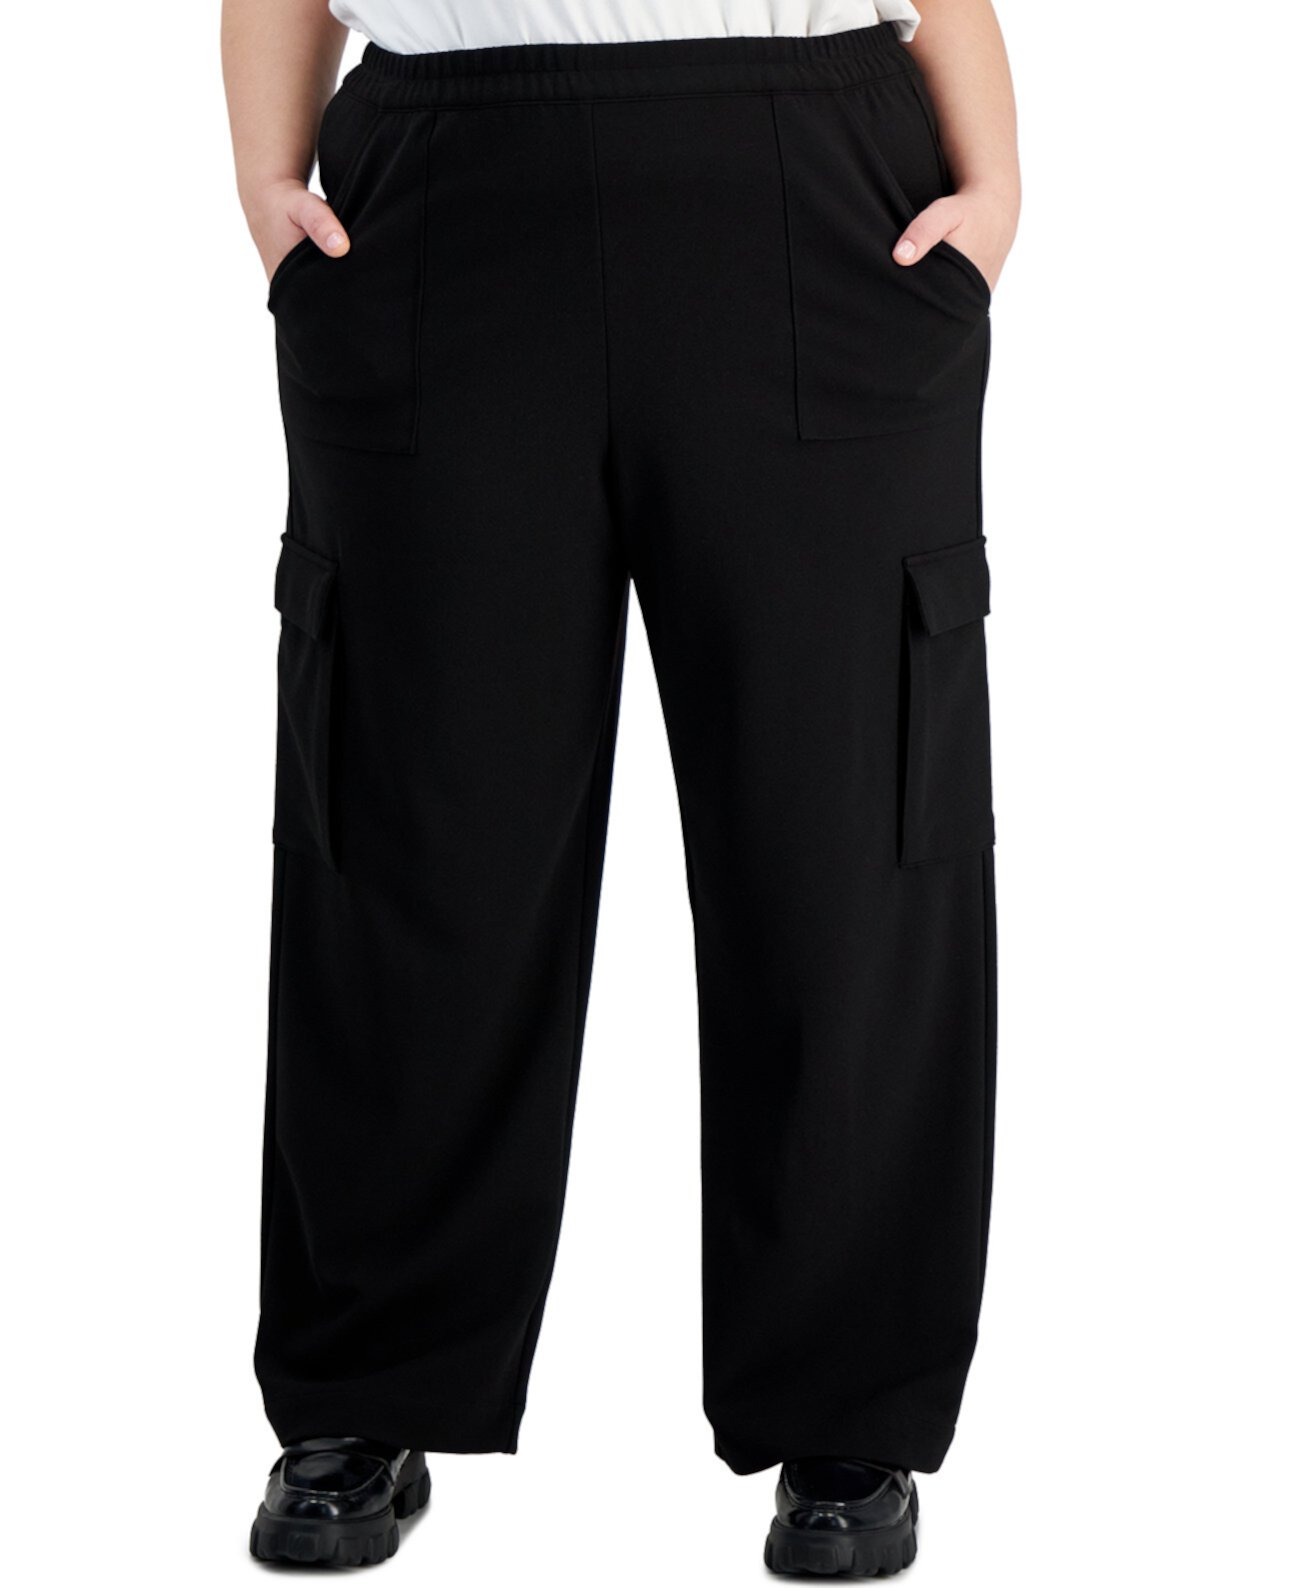 Модные трикотажные брюки карго больших размеров, созданные для Macy's Bar III